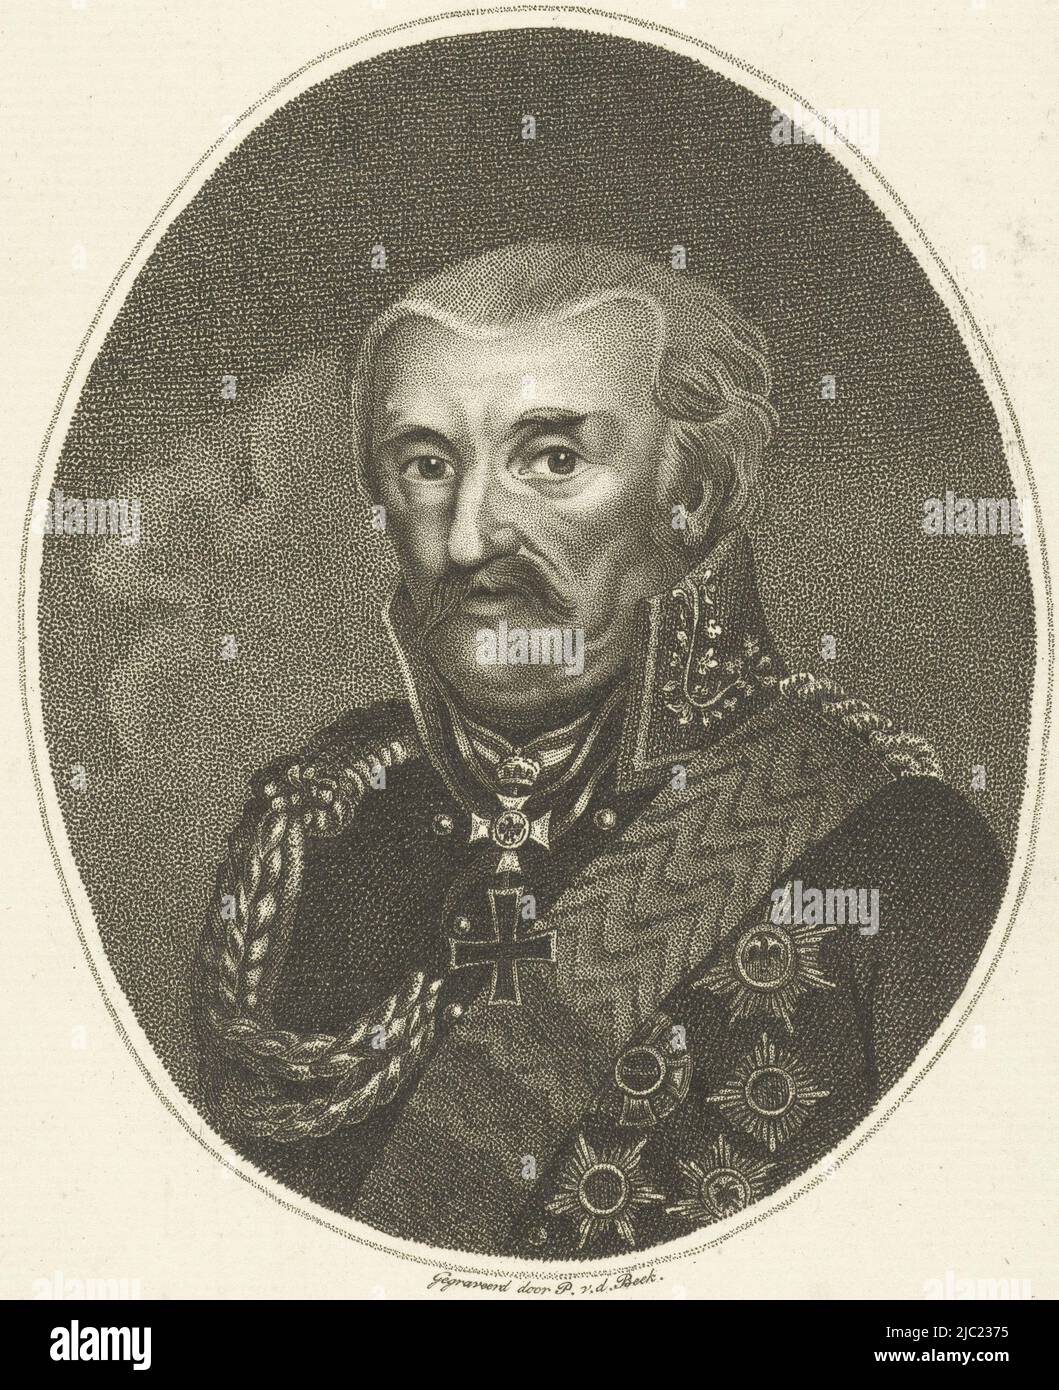 Portrait of Prussian General Gebhard Leberecht von Bl, print maker: Pieter van der Beek, (mentioned on object), publisher: H.C.A. Thieme, Zutphen, 1800 - 1821, paper, etching, h 191 mm × w 122 mm Stock Photo